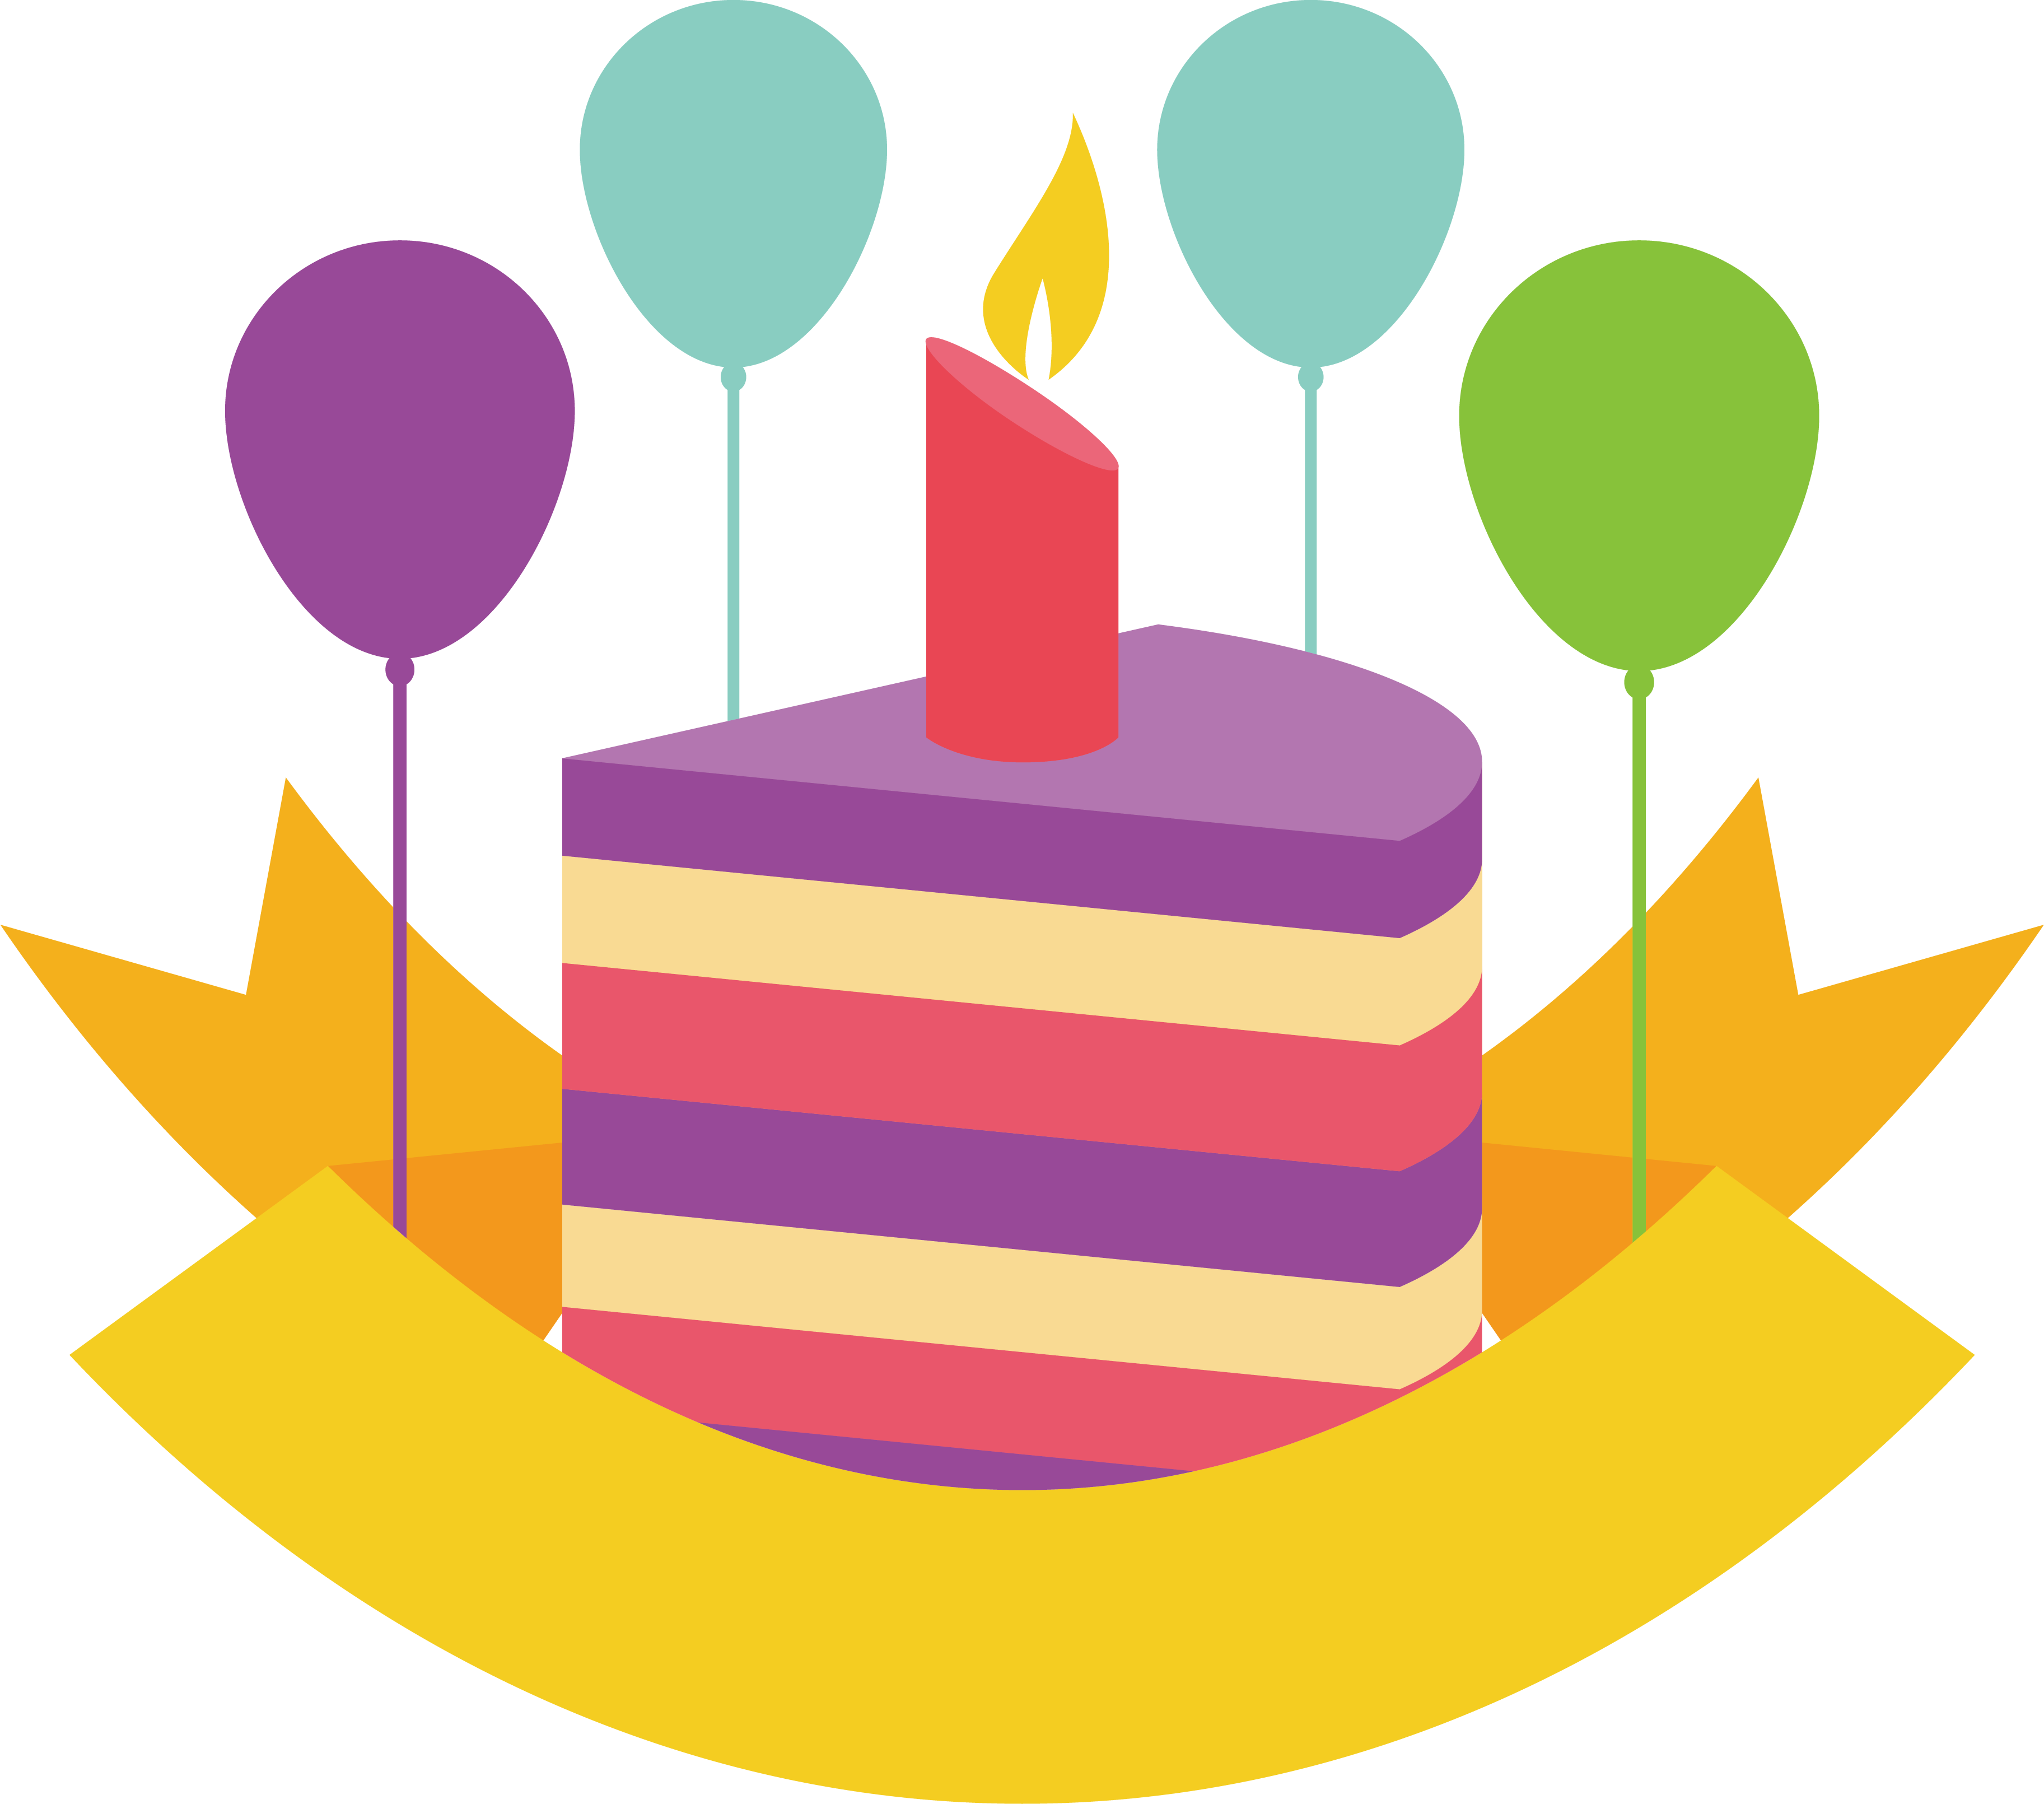 Birthday Cake Balloon - Birthday Cake Balloon (3650x3221)